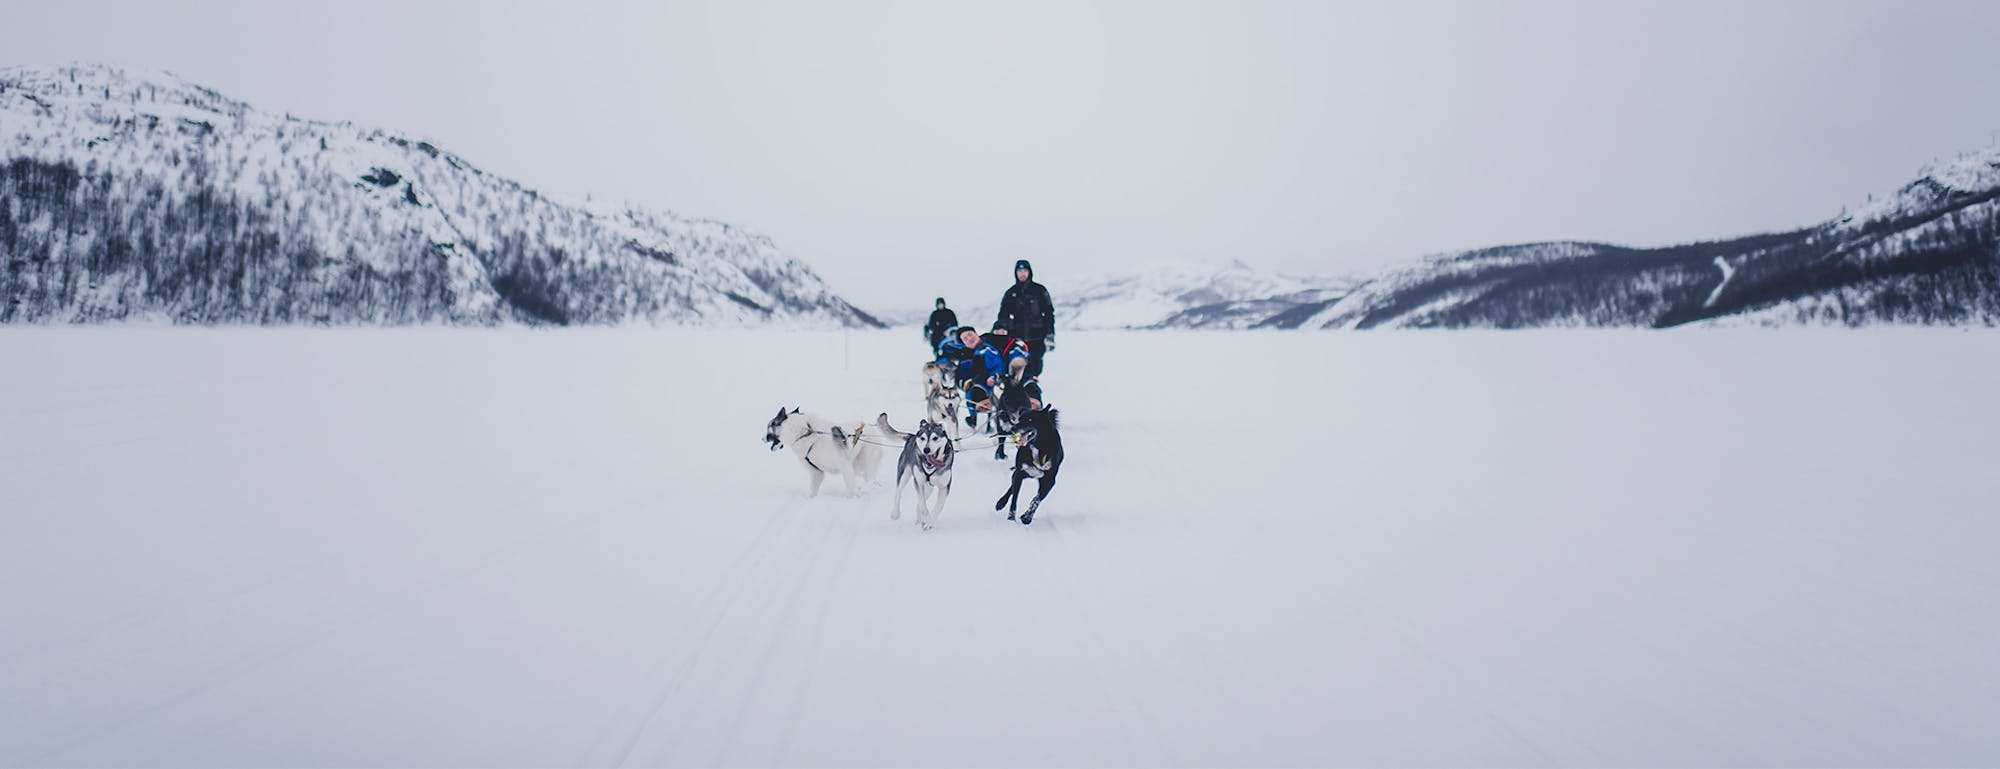 A dog team pulls a sled across the snow